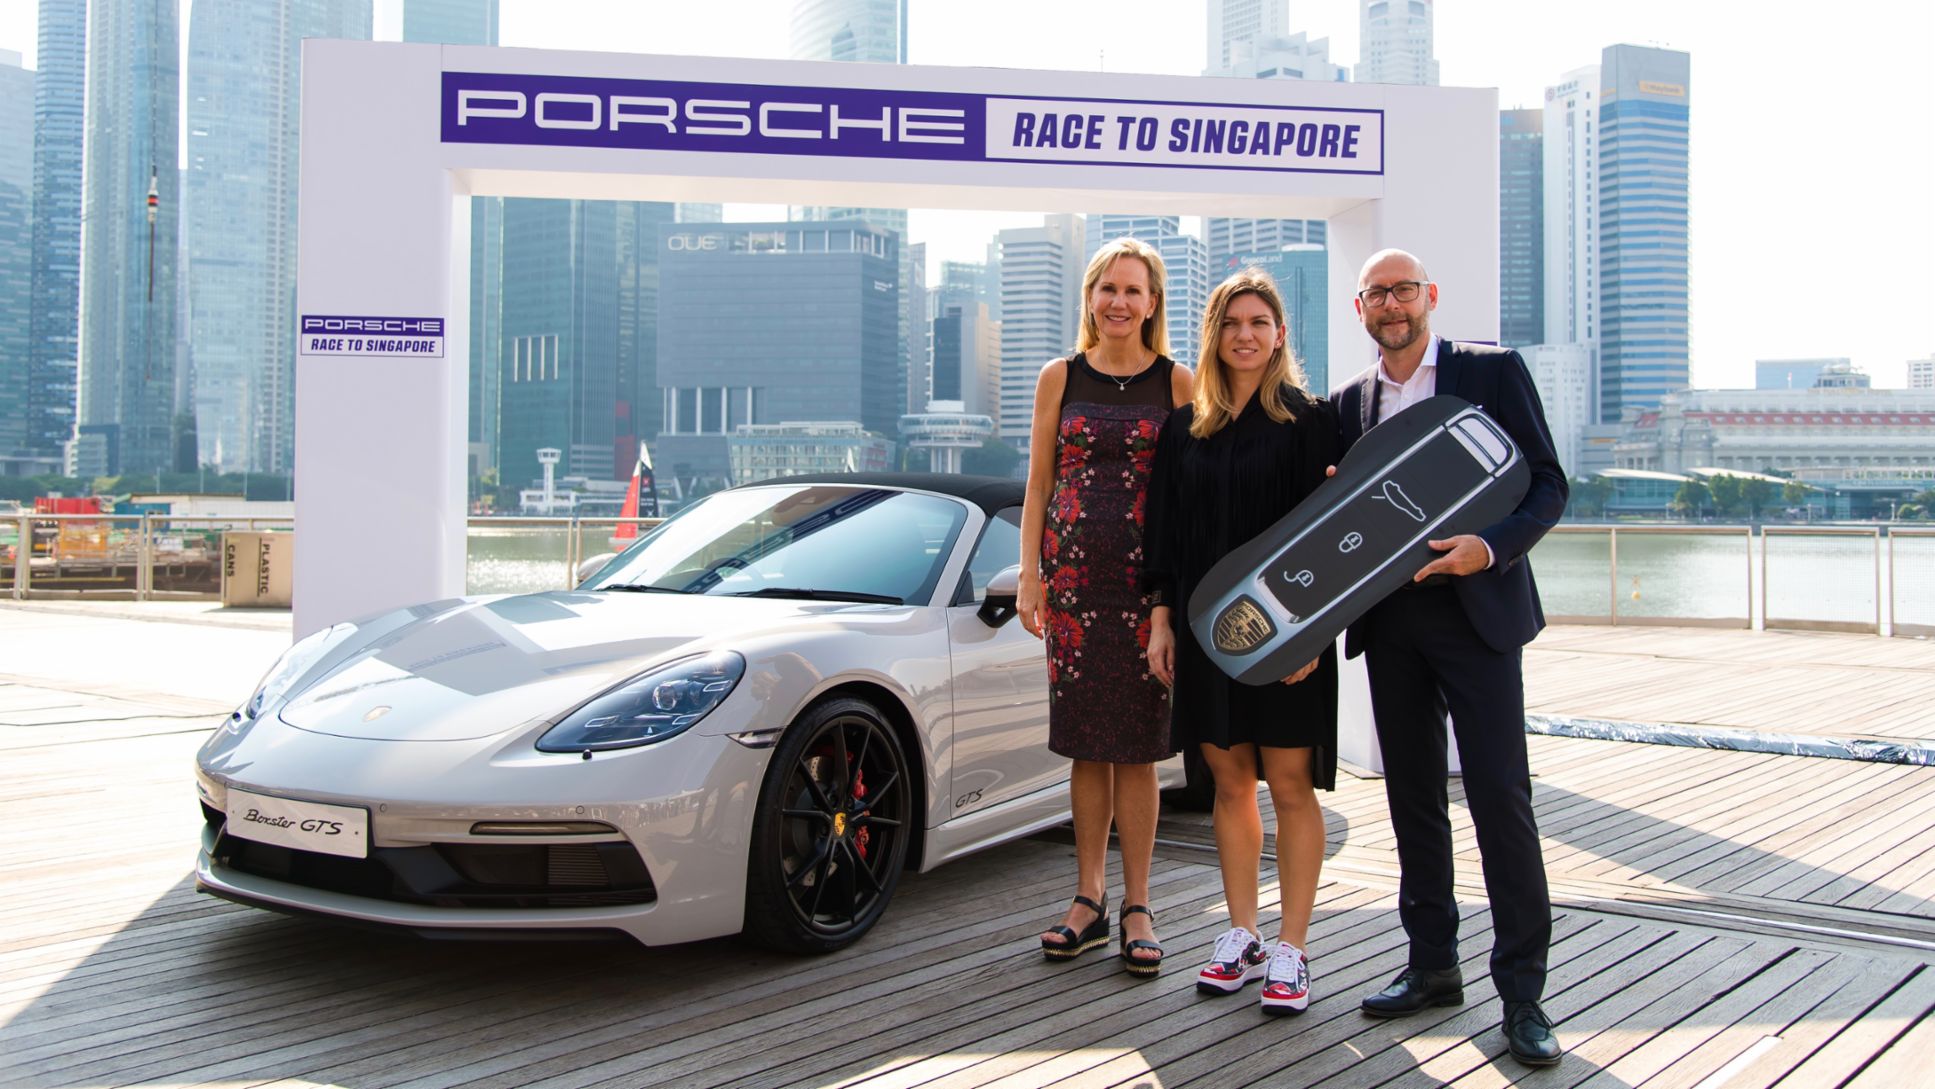 Micky Lawler (WTA), Simona Halep (Gewinnerin des Porsche Race to Singapore 2017 und 2018), Oliver Eidam (Porsche AG), l-r, 718 Boxster GTS, Singapur, 2018, Porsche AG